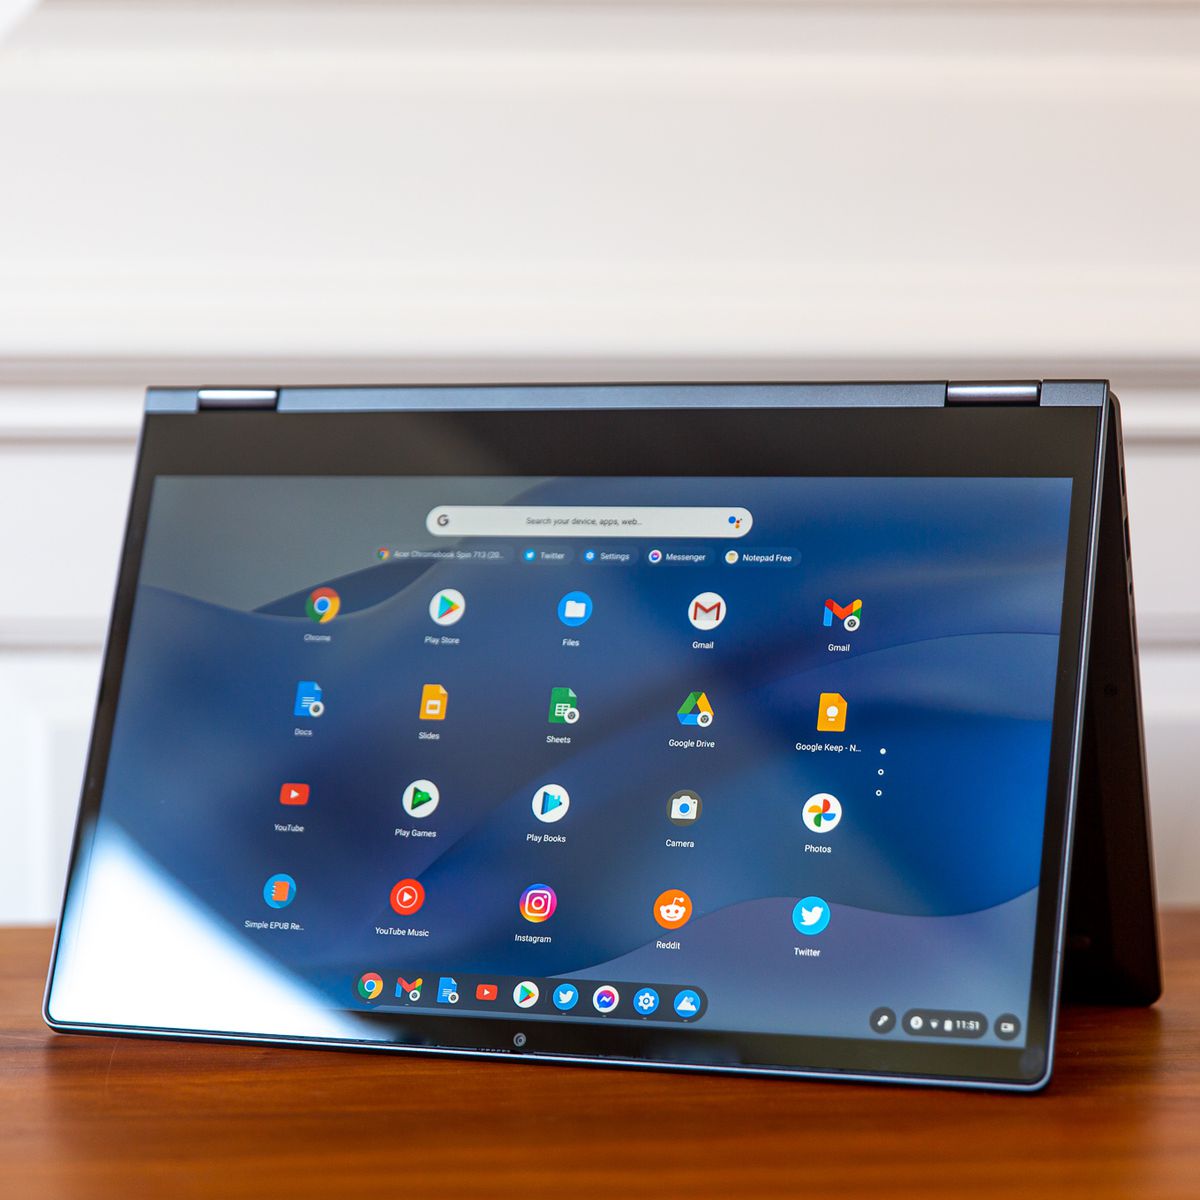 Das Lenovo Flex 5 Chromebook im Zeltmodus, nach links geneigt.  Auf dem Bildschirm wird ein Raster aus Chrome OS-Symbolen auf einem blauen, wellenförmigen Hintergrund angezeigt.